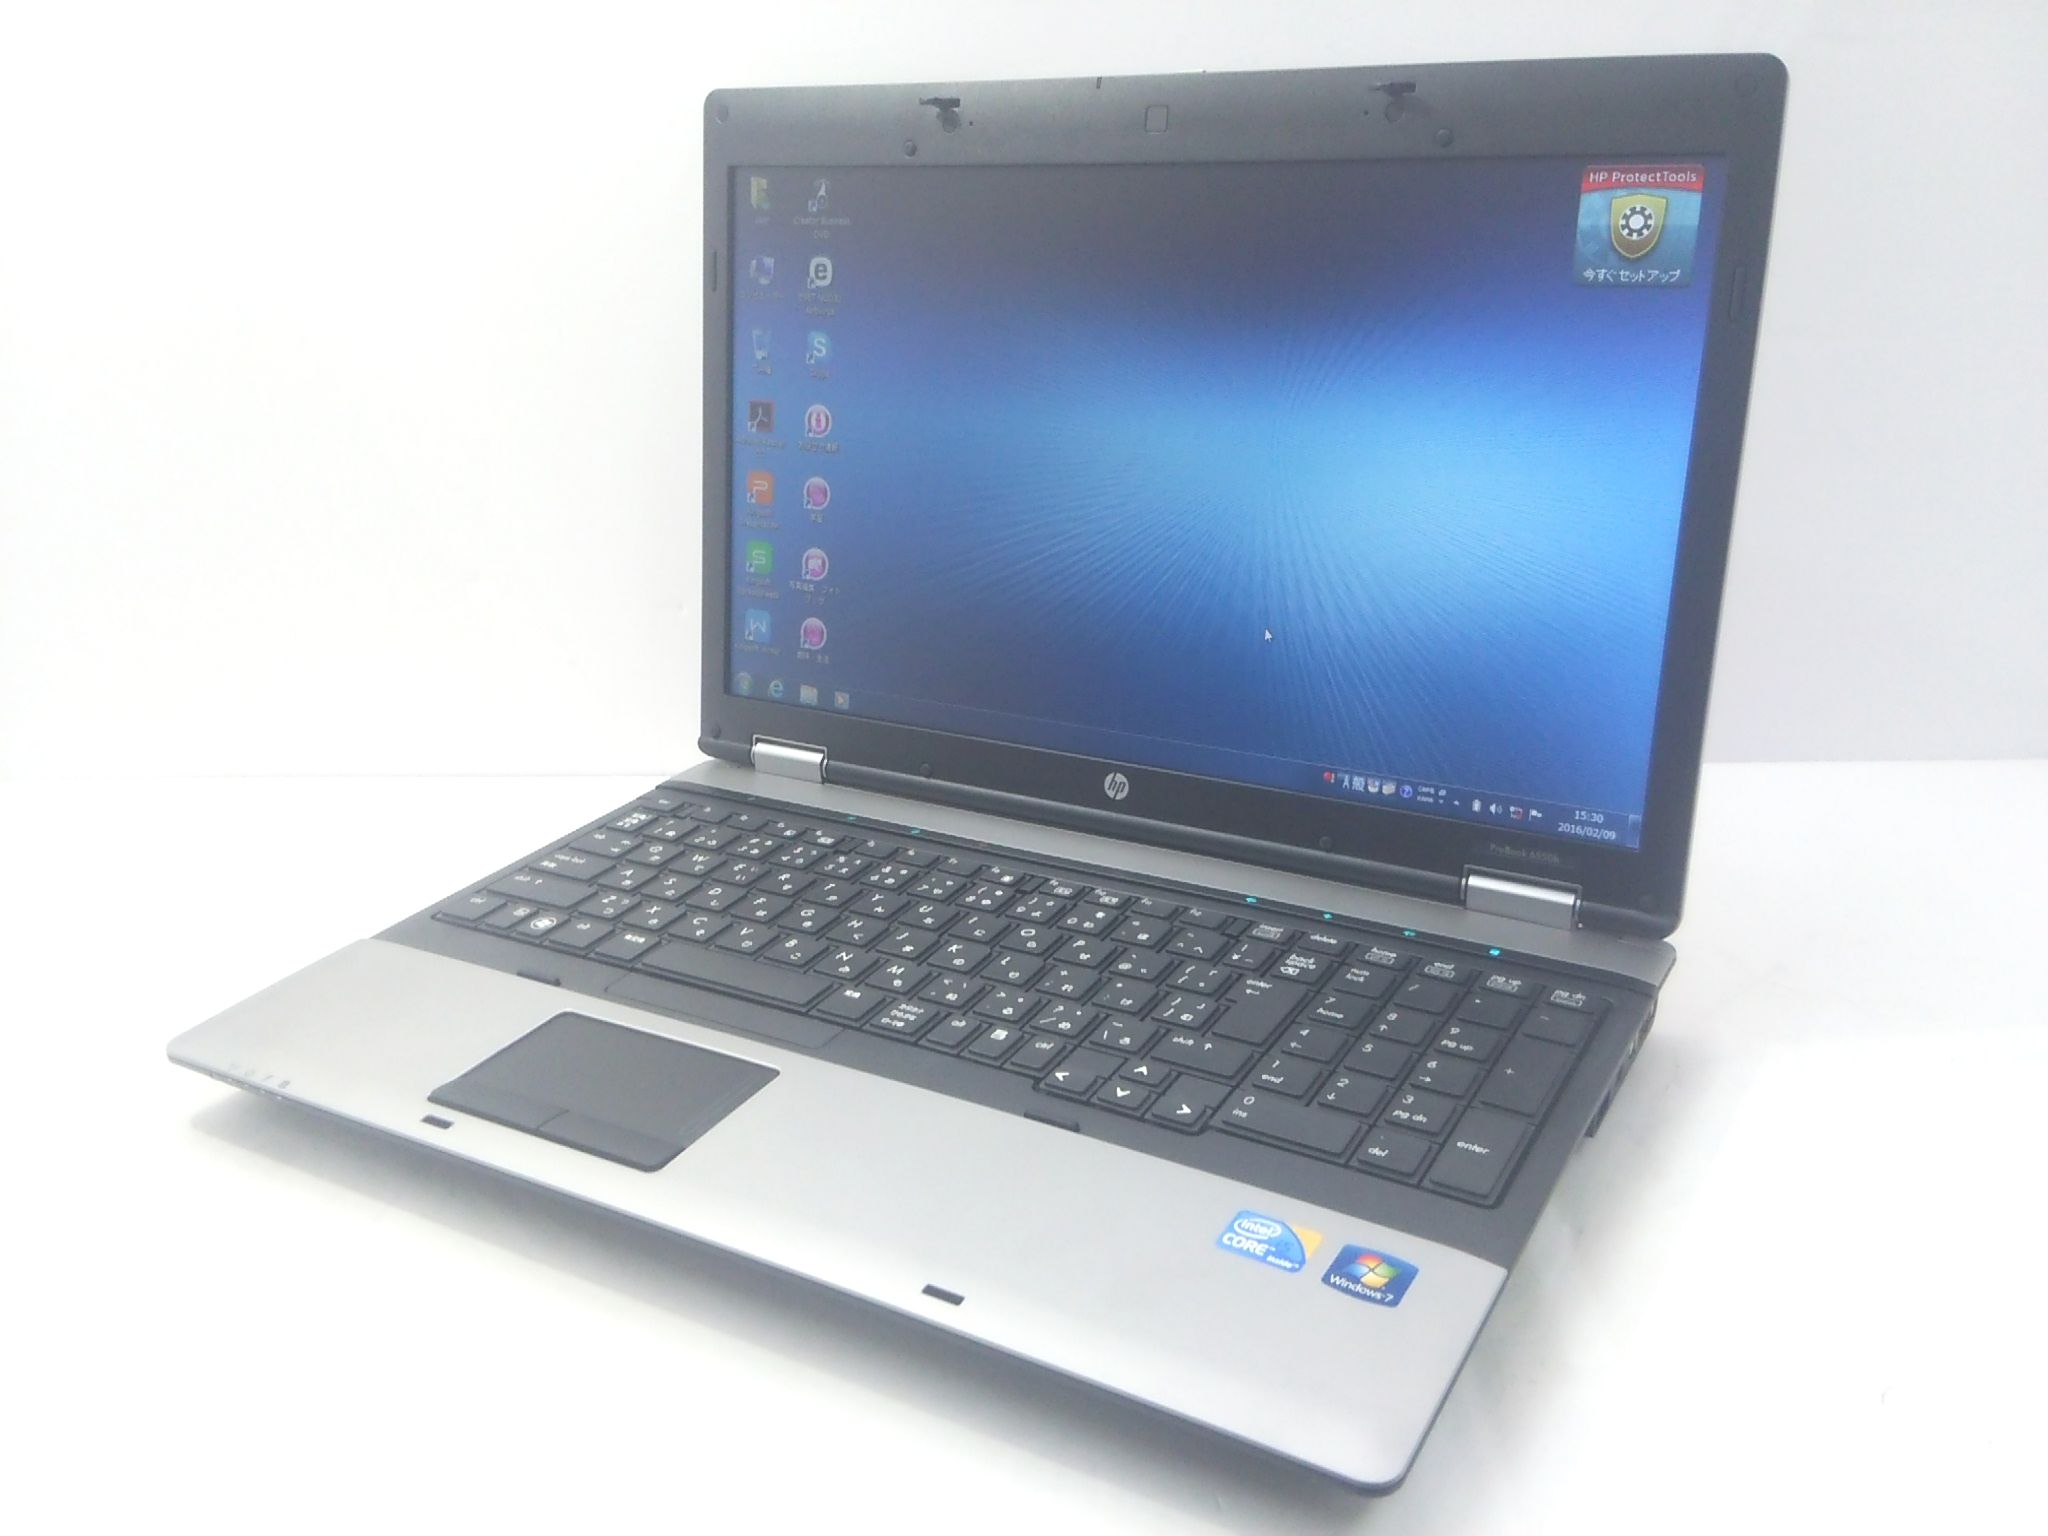 HP ProBook 6550b CPU:Core i5 M560 2.67GHz / メモリ:4GB / HDD:250GB